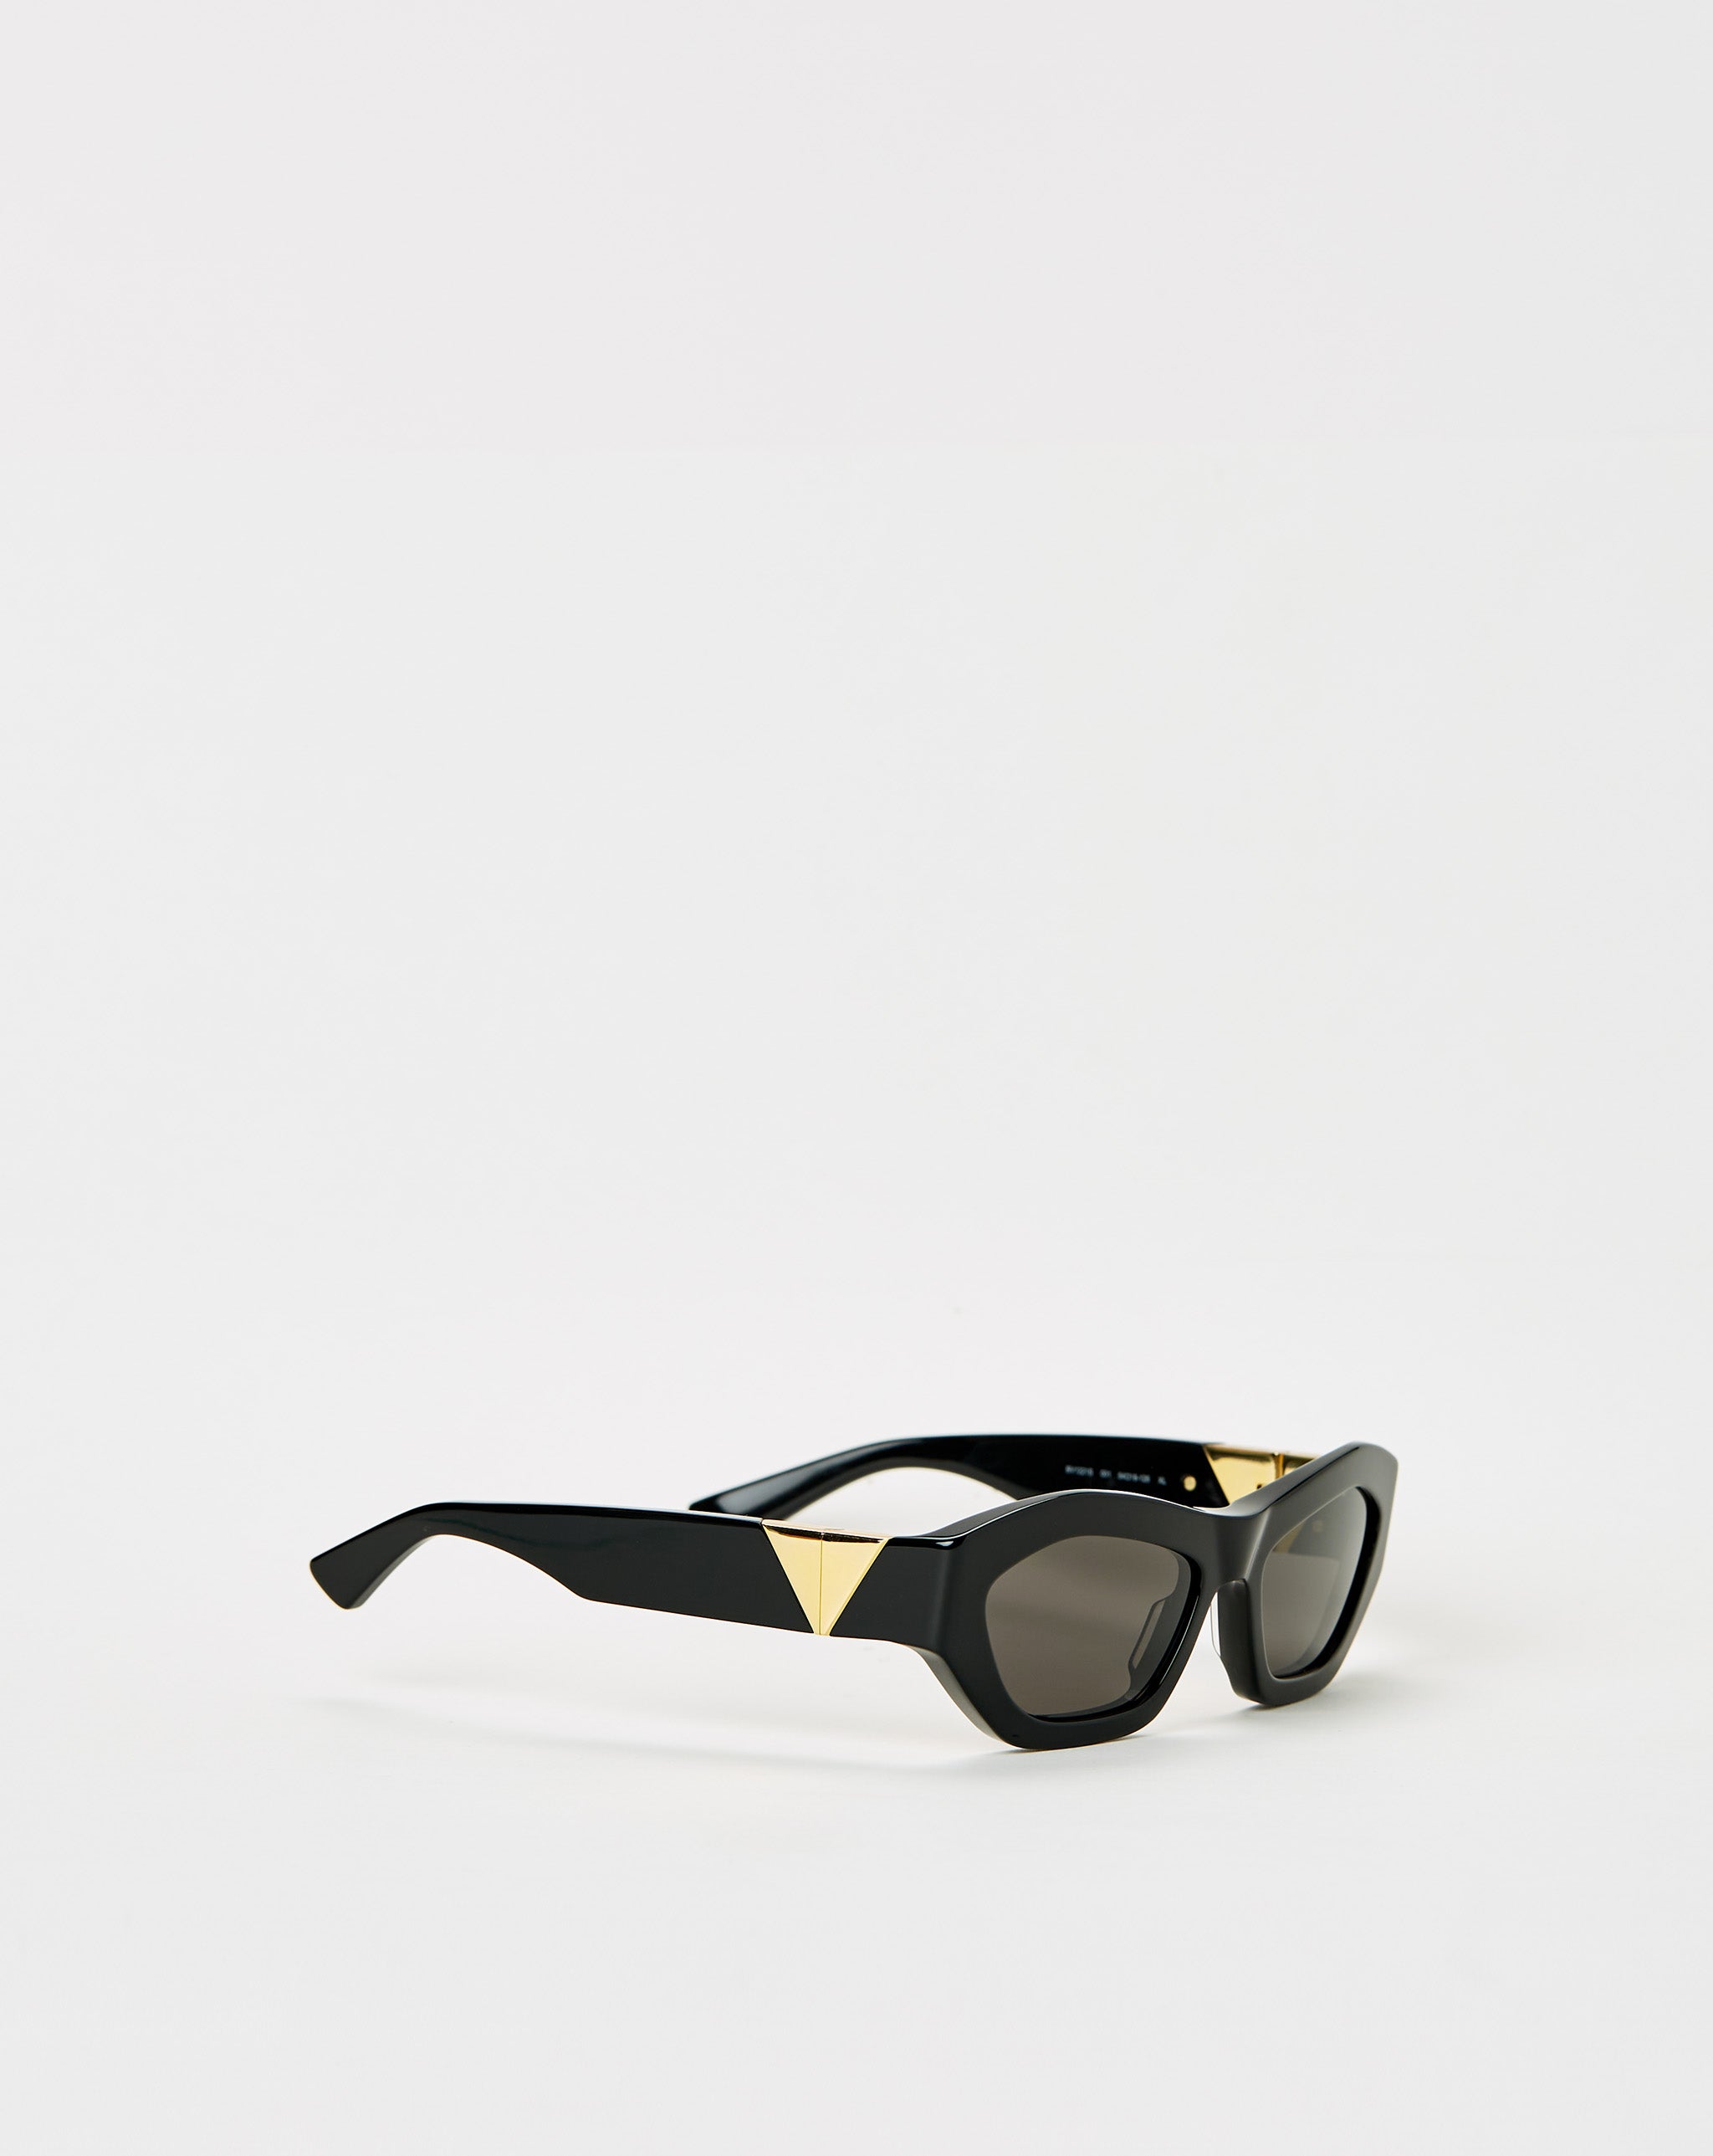 Bottega Veneta sunglasses vans bomb shades vn0a45goblk1 black  - Cheap Urlfreeze Jordan outlet